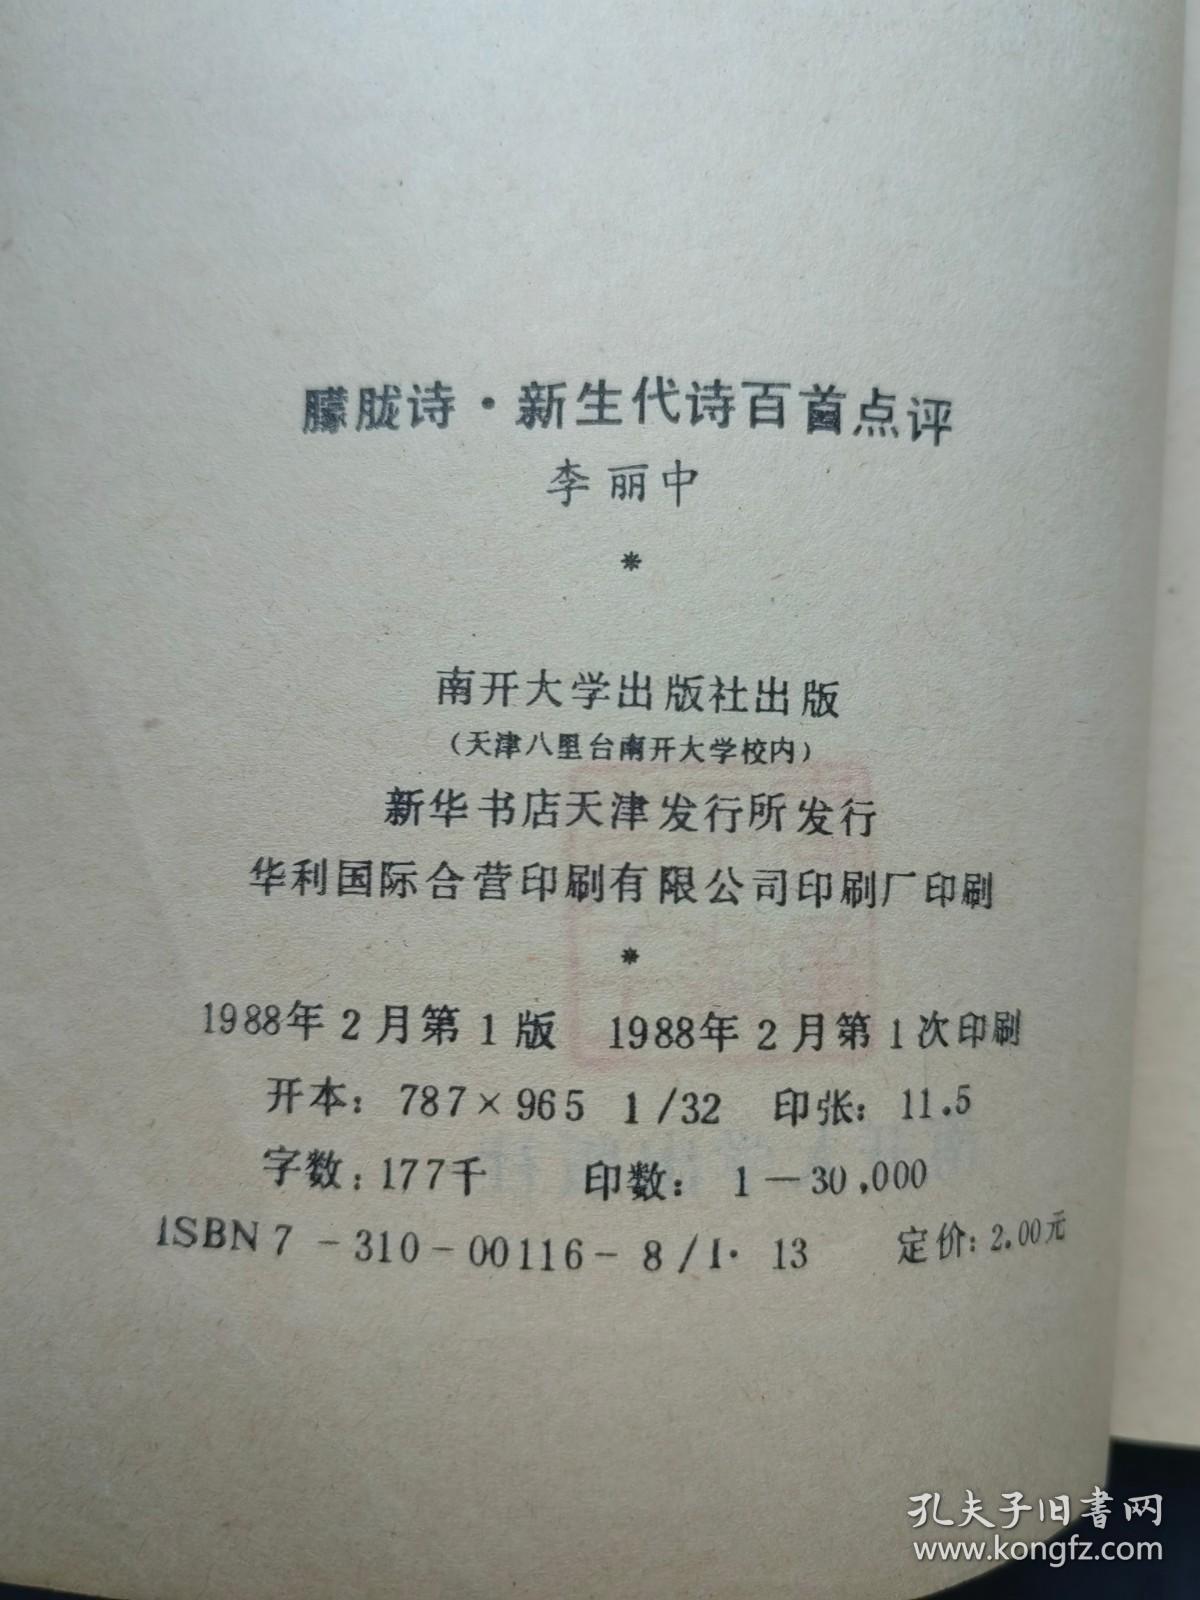 1988年1版1印《朦胧诗 · 新生代诗百首点评》李丽中 南开大学出版社